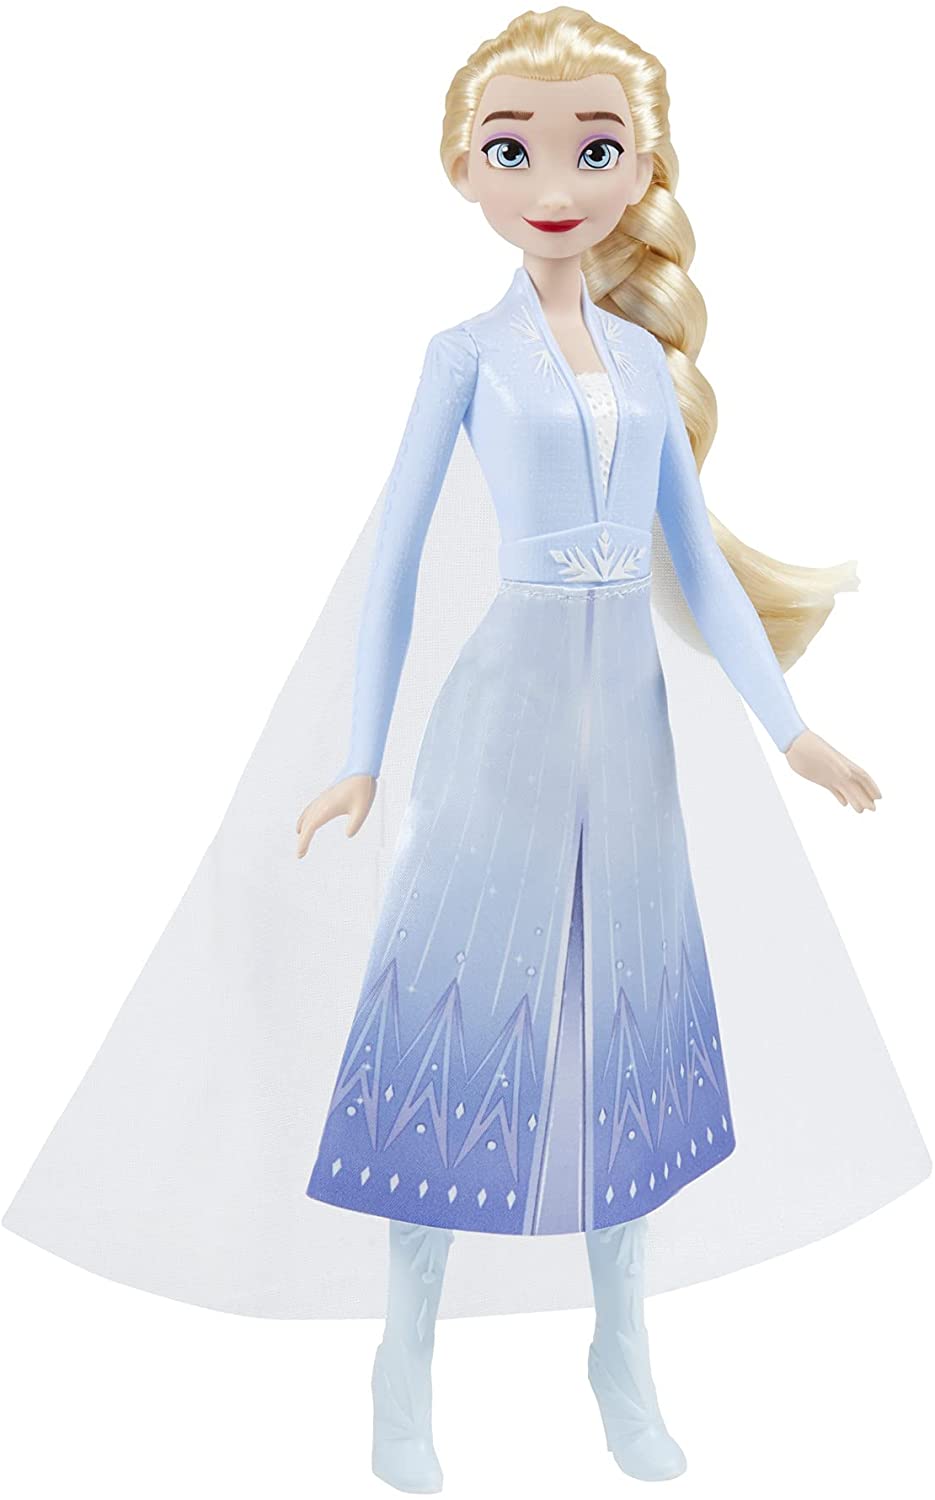 Disney F0796 2 Bambola di moda Elsa Frozen Shimmer, gonna, scarpe e capelli lunghi biondi, giocattolo per bambini dai 3 anni in su